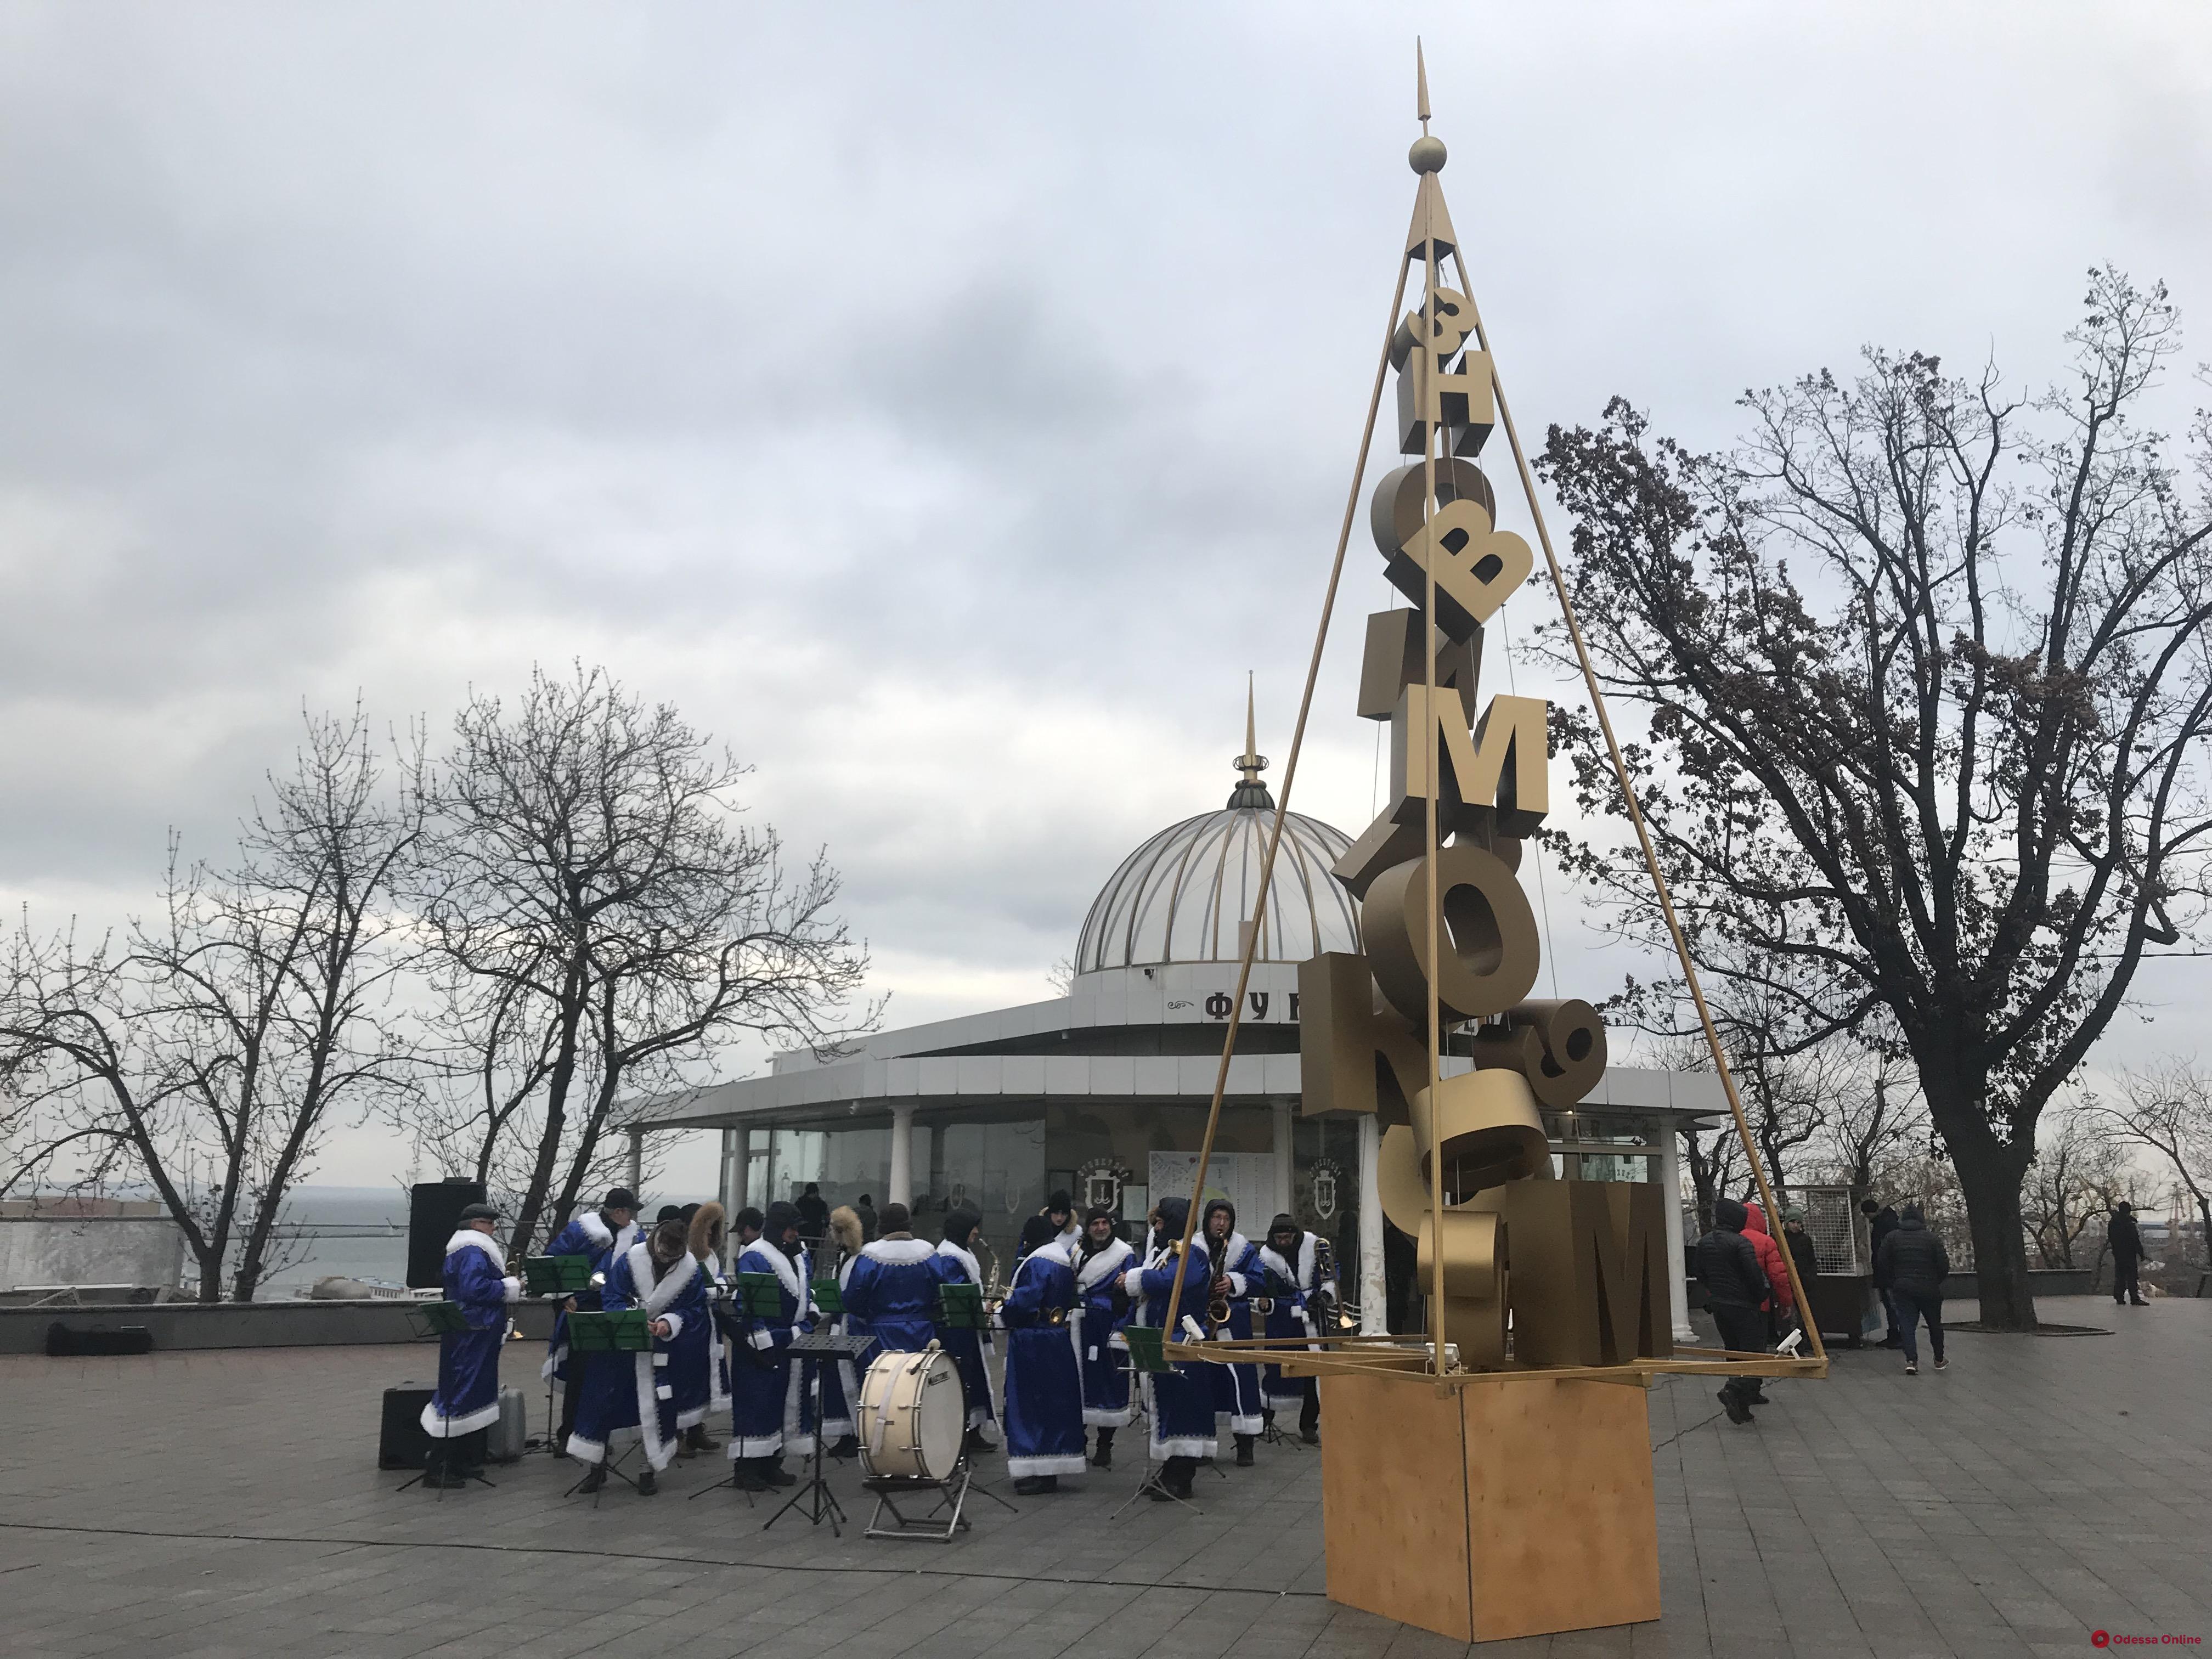 Оркестр, танцы и потерянные вещи Санта-Клауса: в Одессе открыли арт-елку